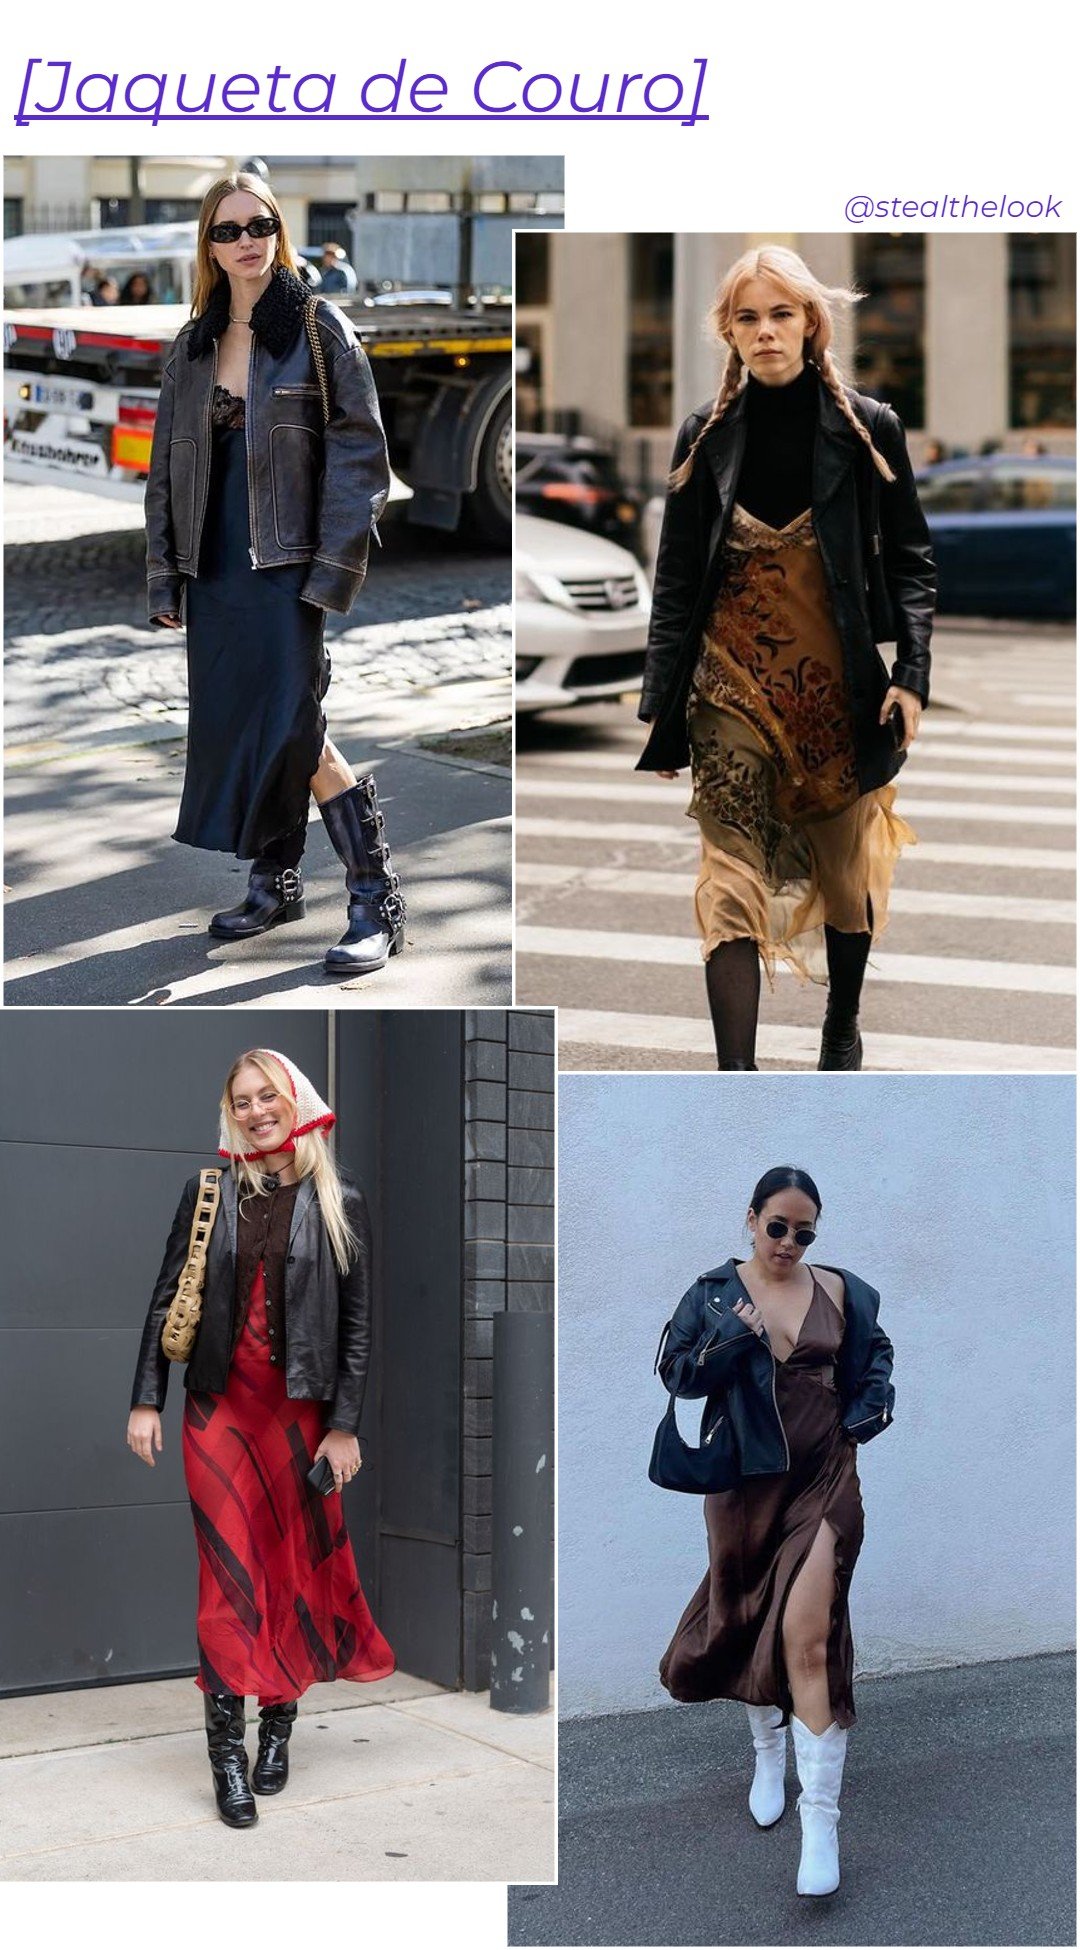 mulher - slip dress jaqueta de couro - slip dress - outono inverno - Brasil - https://stealthelook.com.br